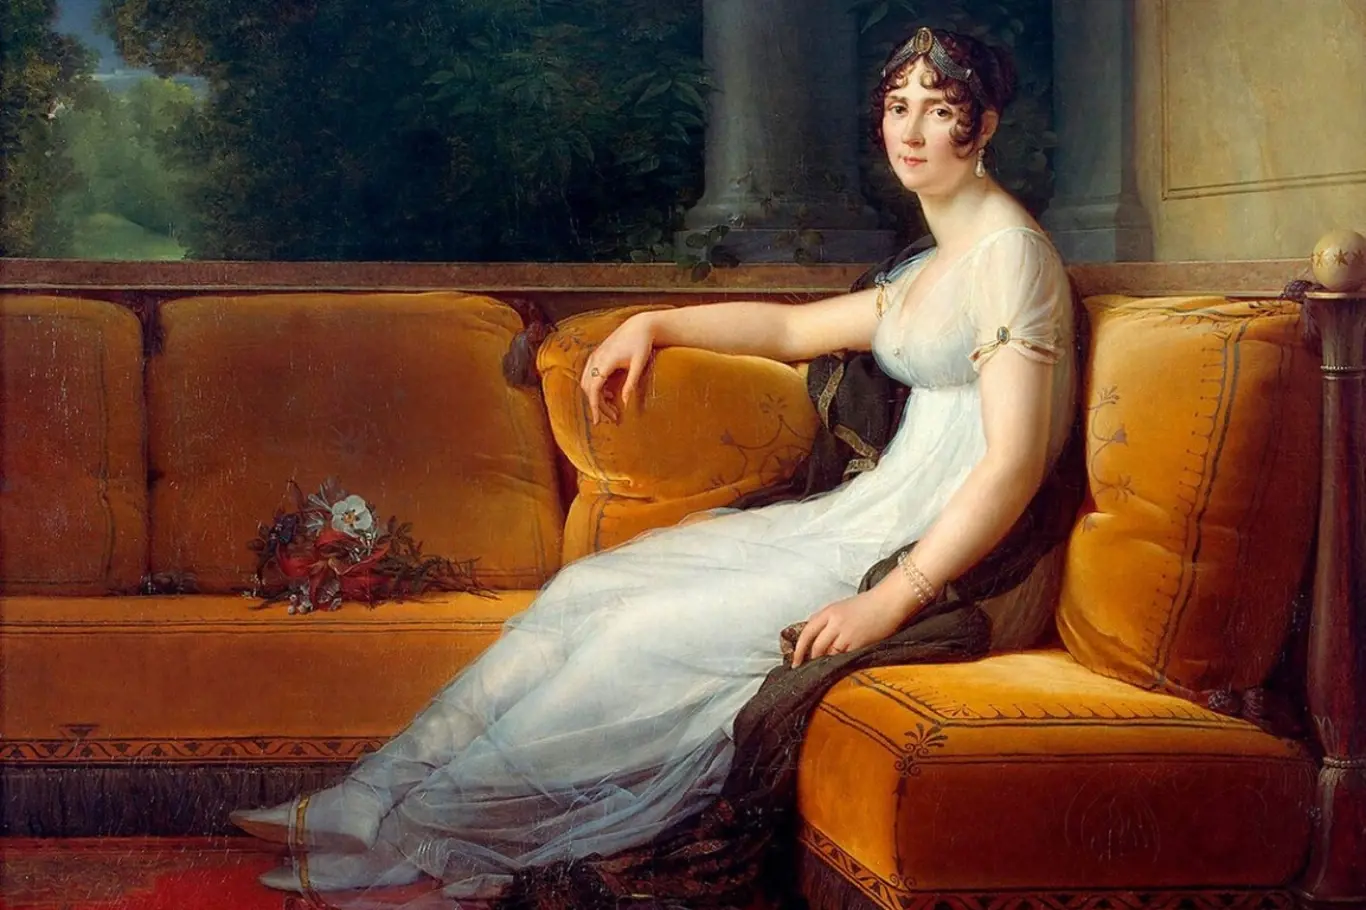 Portrét Napoleonovy první manželky Josephine de Beauharnais, francouzské císařovny. Francois Gerard, 1801